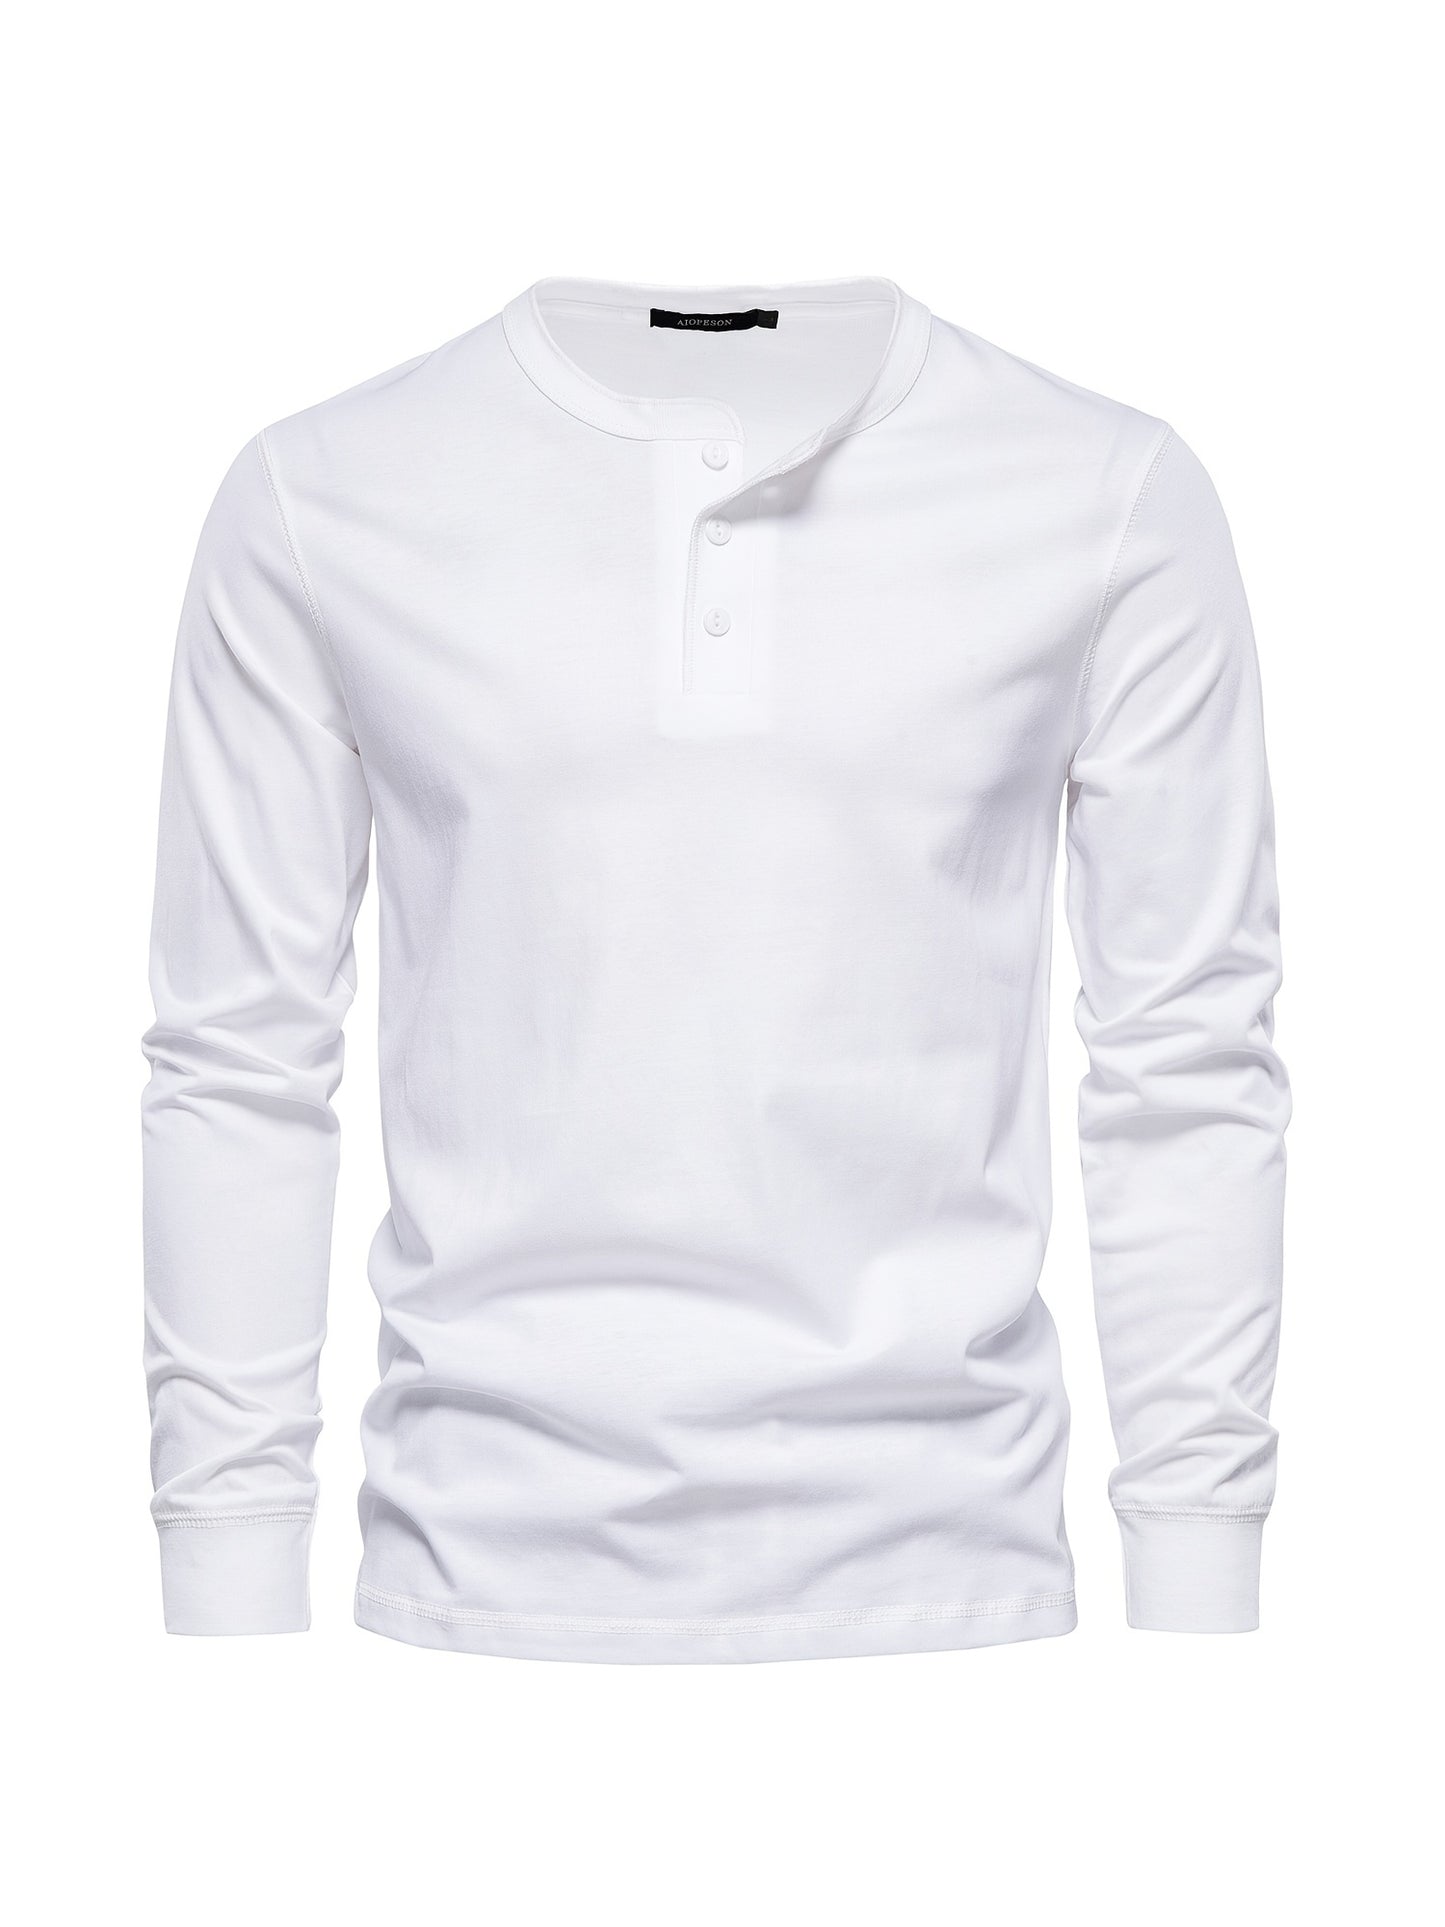 Stilvolles Langarm Shirt mit Henley-Kragen für Männer - Snatch